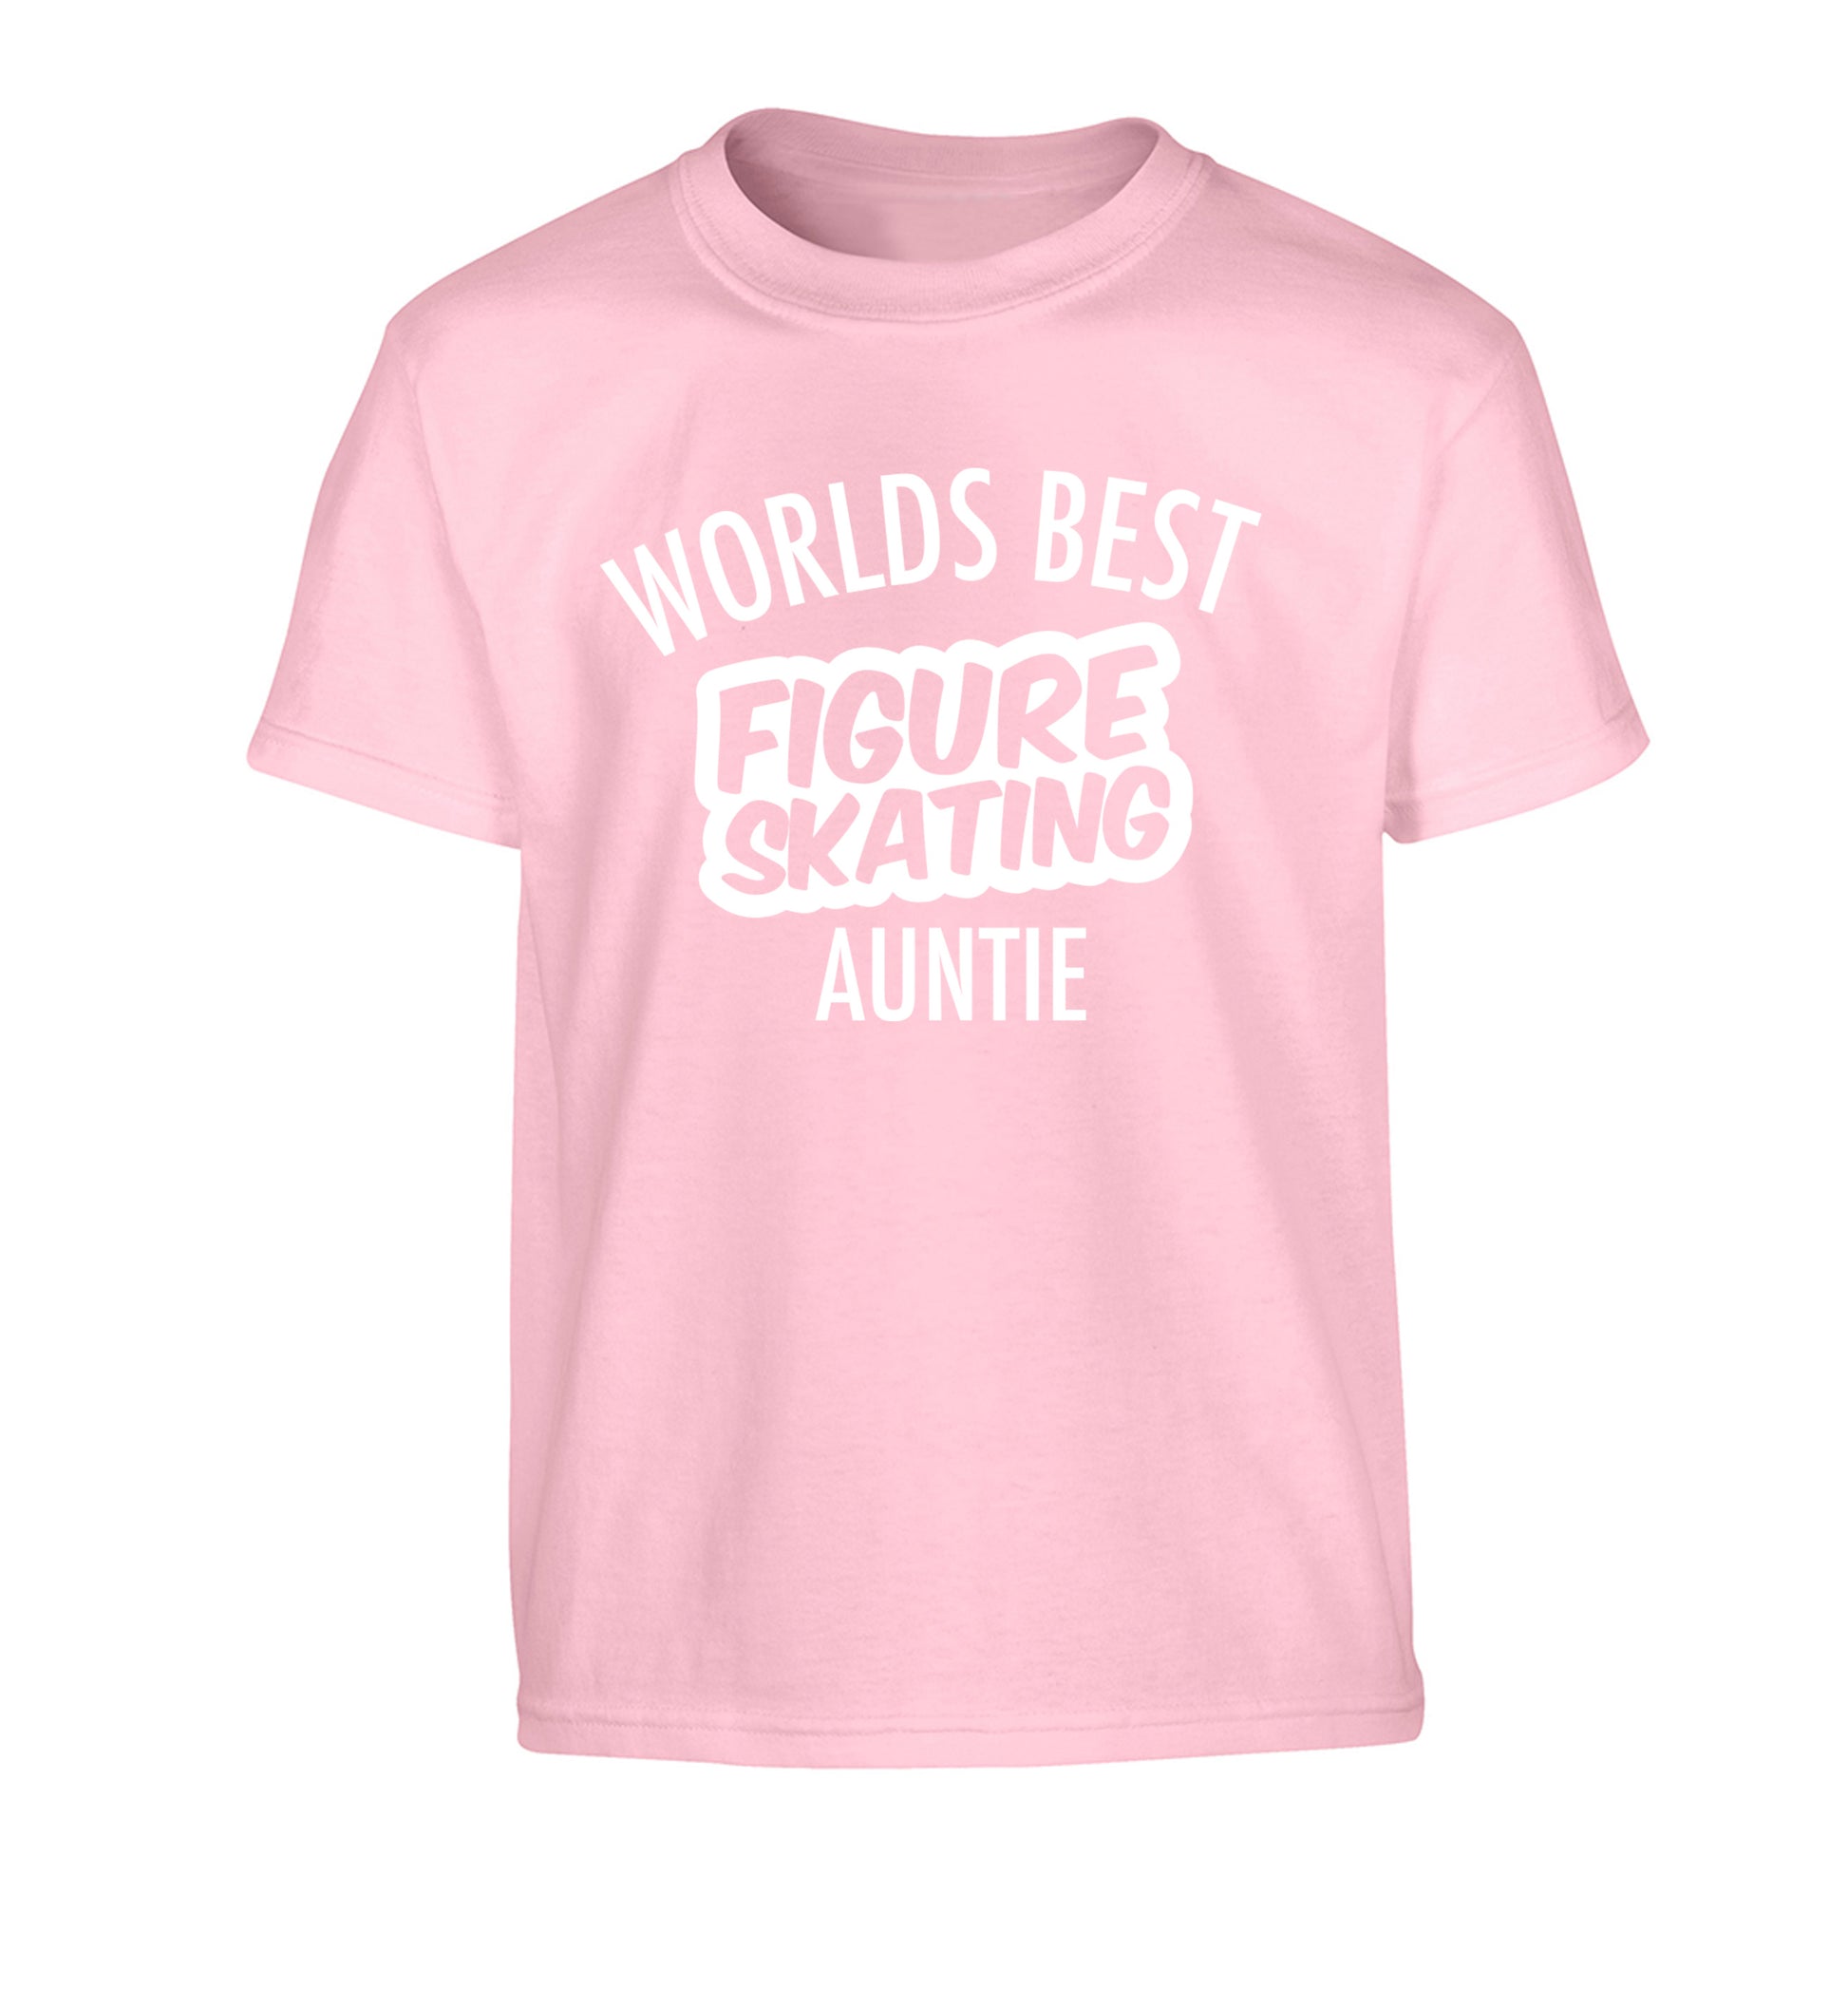 Worlds best figure skating auntie Children's light pink Tshirt 12-14 Years